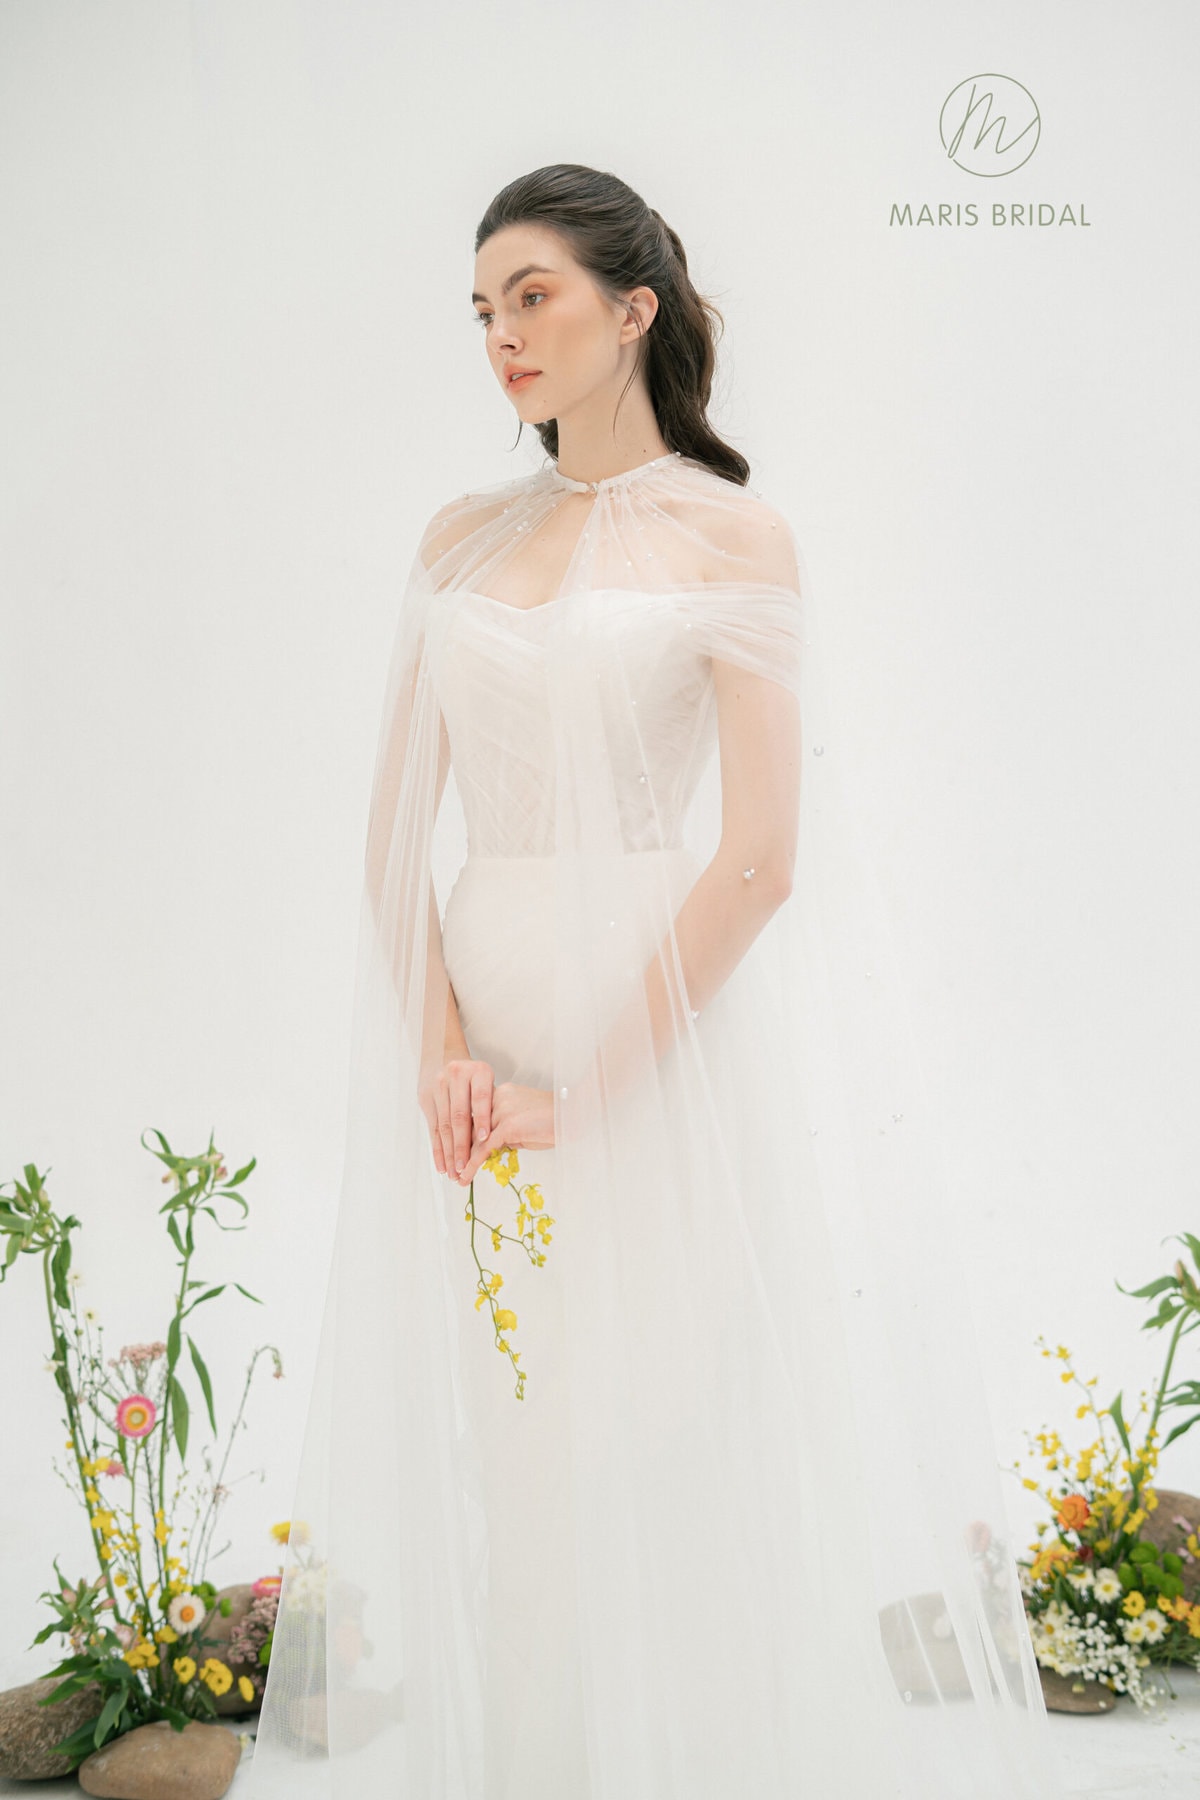 Áo cưới thiết kế theo phong cách tối giản của Nicole Bridal